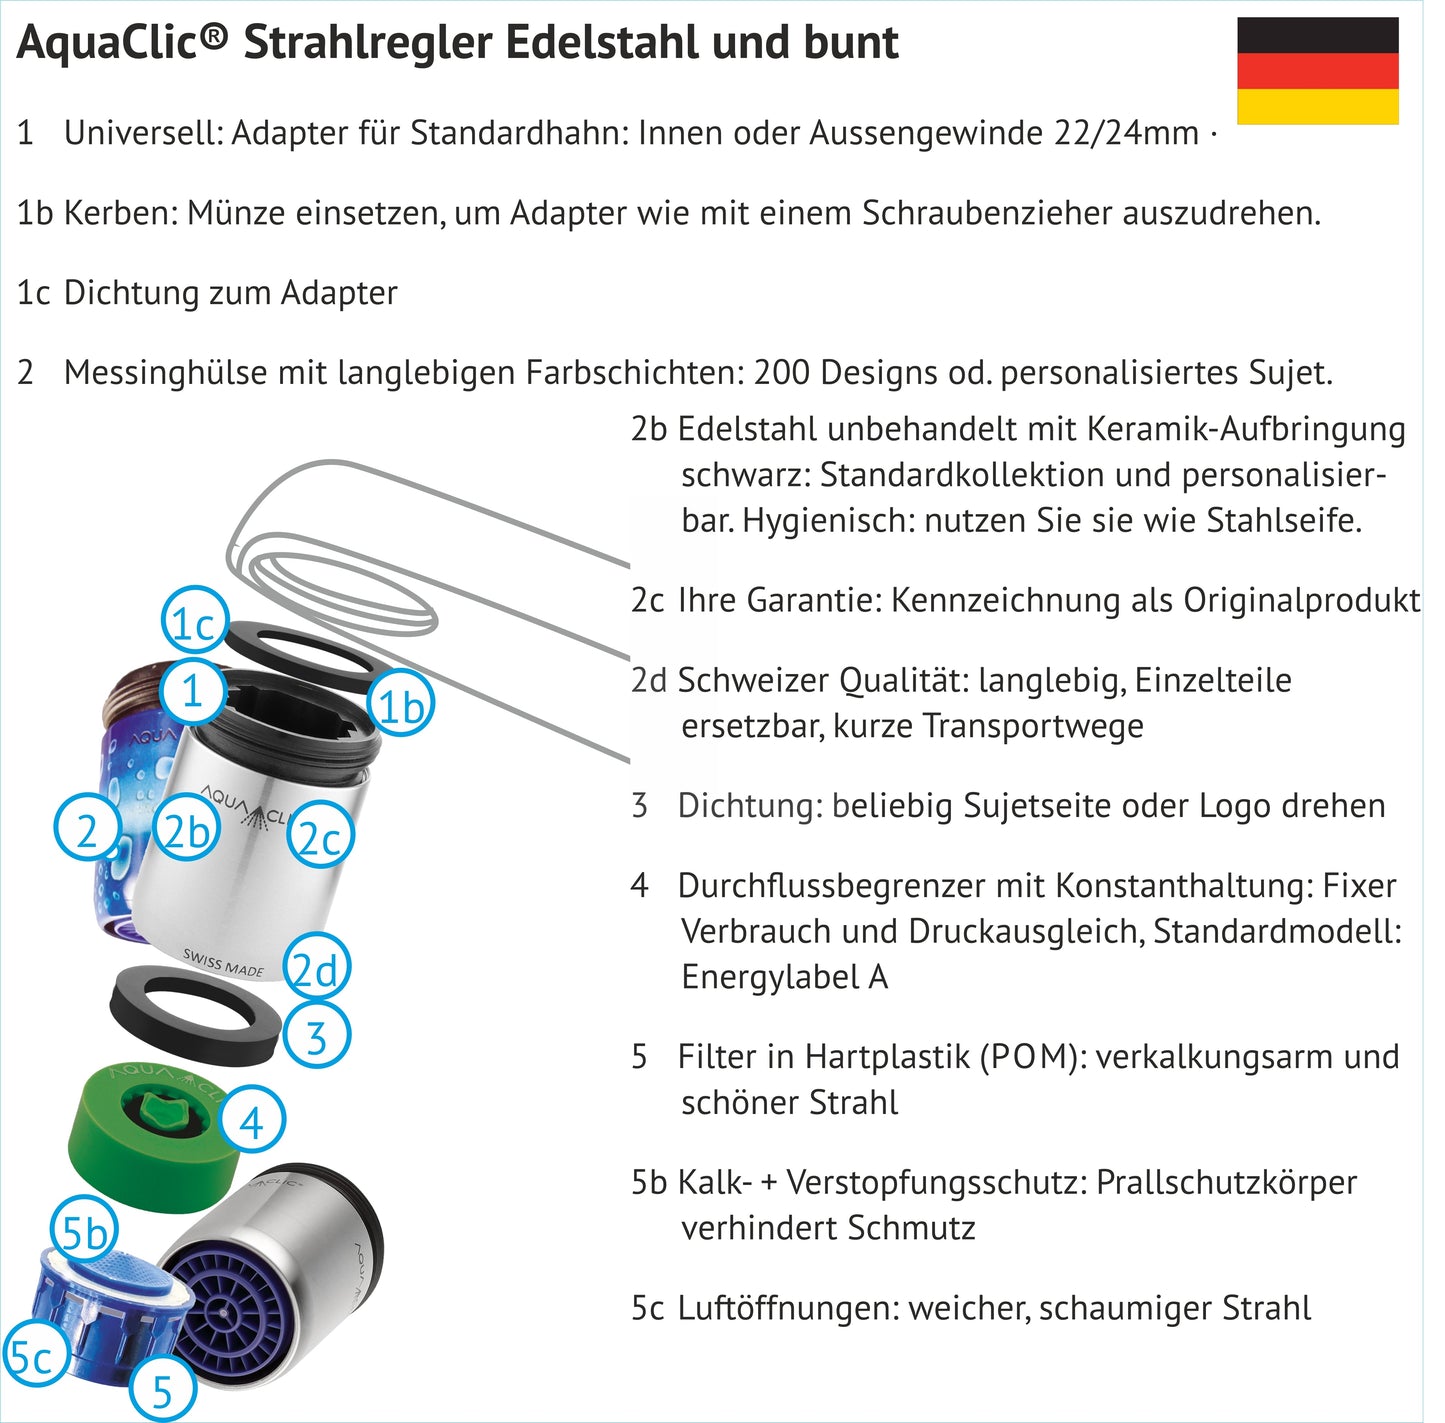 Dessin en forme d'explosion d'un régulateur de jet AquaClic avec l'intérieur et la désignation des différentes pièces, en allemand